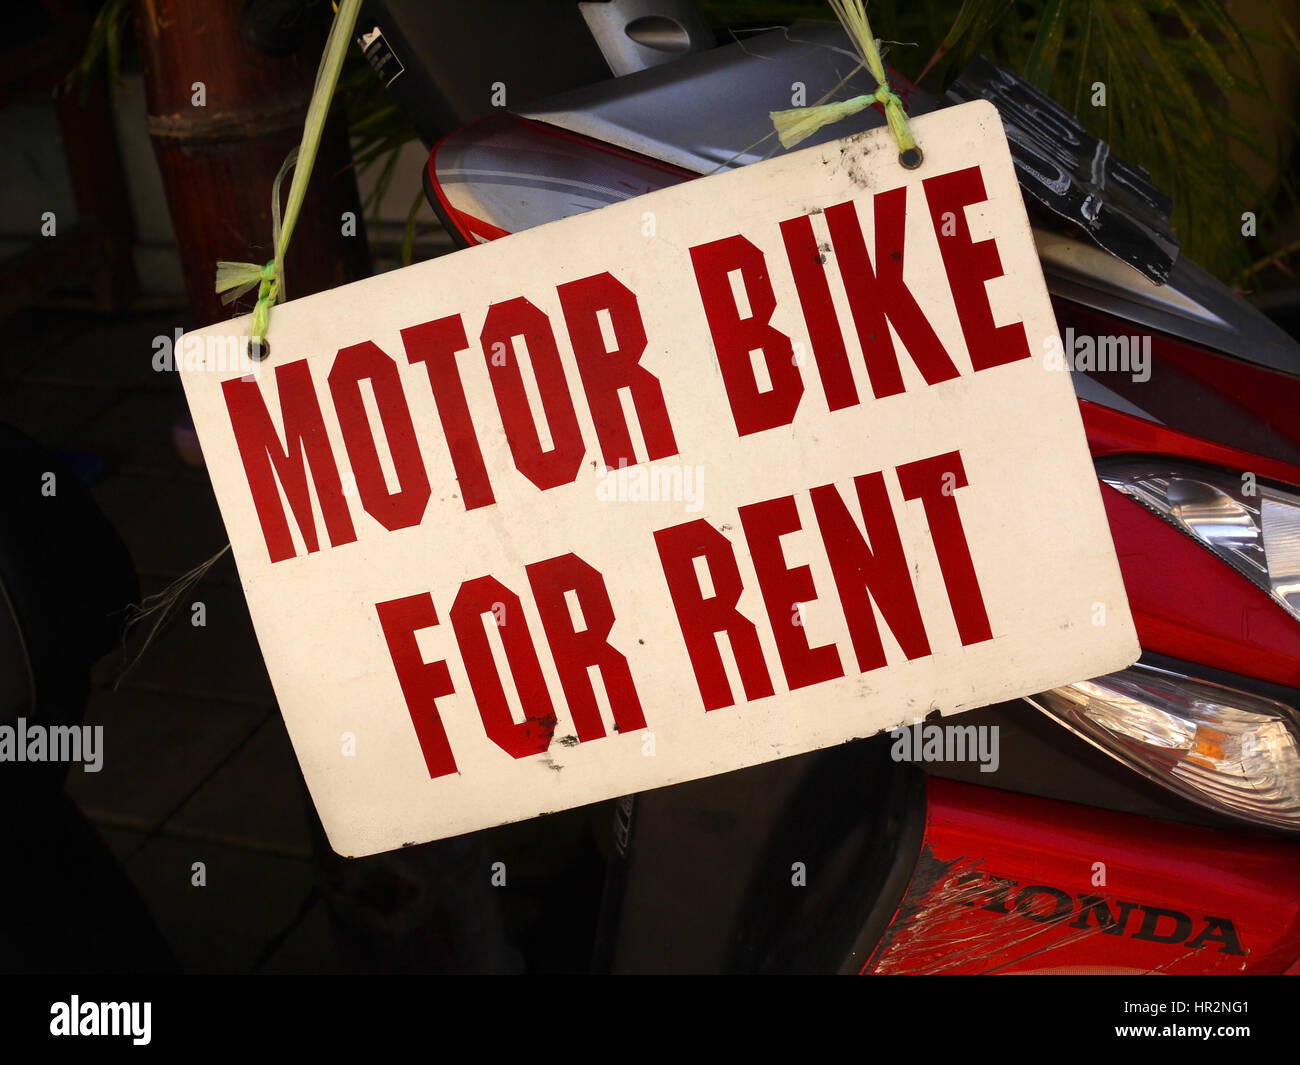 'Motor bike for rent' sign over Honda motorbike. Kuta, Bali, Indonesia Stock Photo